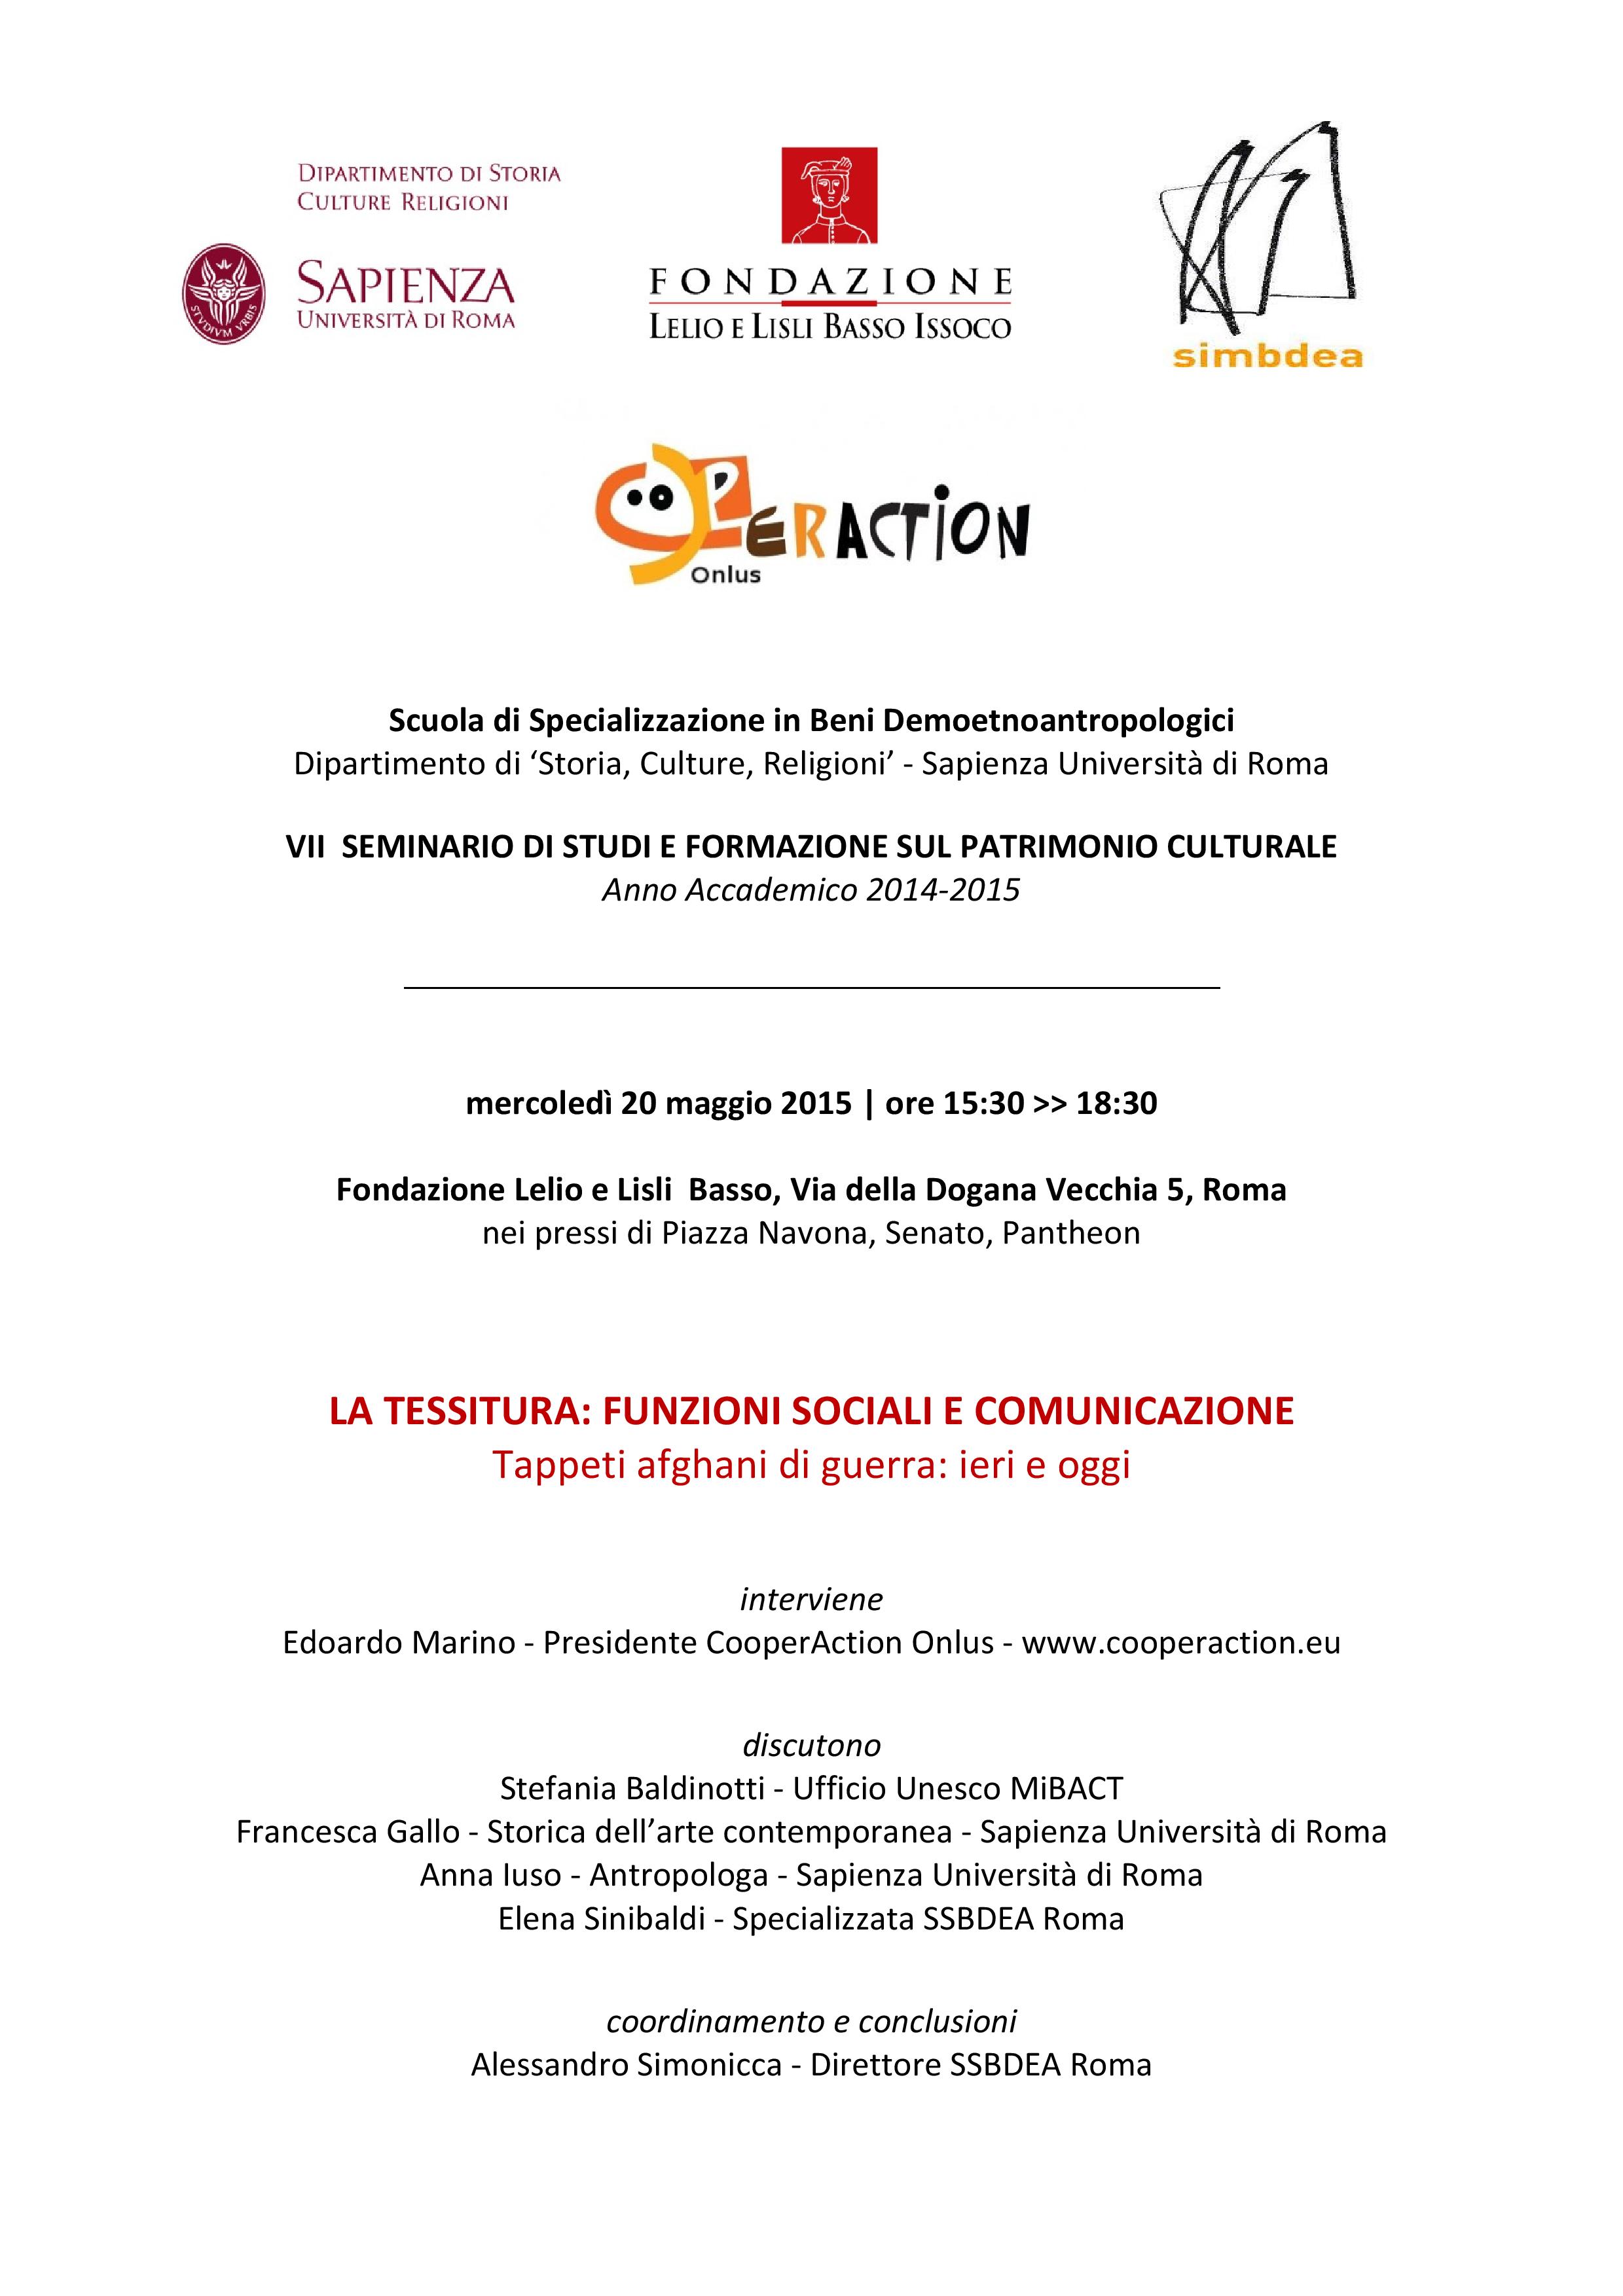 Locandina Fondazione Basso CooperAction La tessitura: funzioni sociali e comunicazione 20 maggio 2015